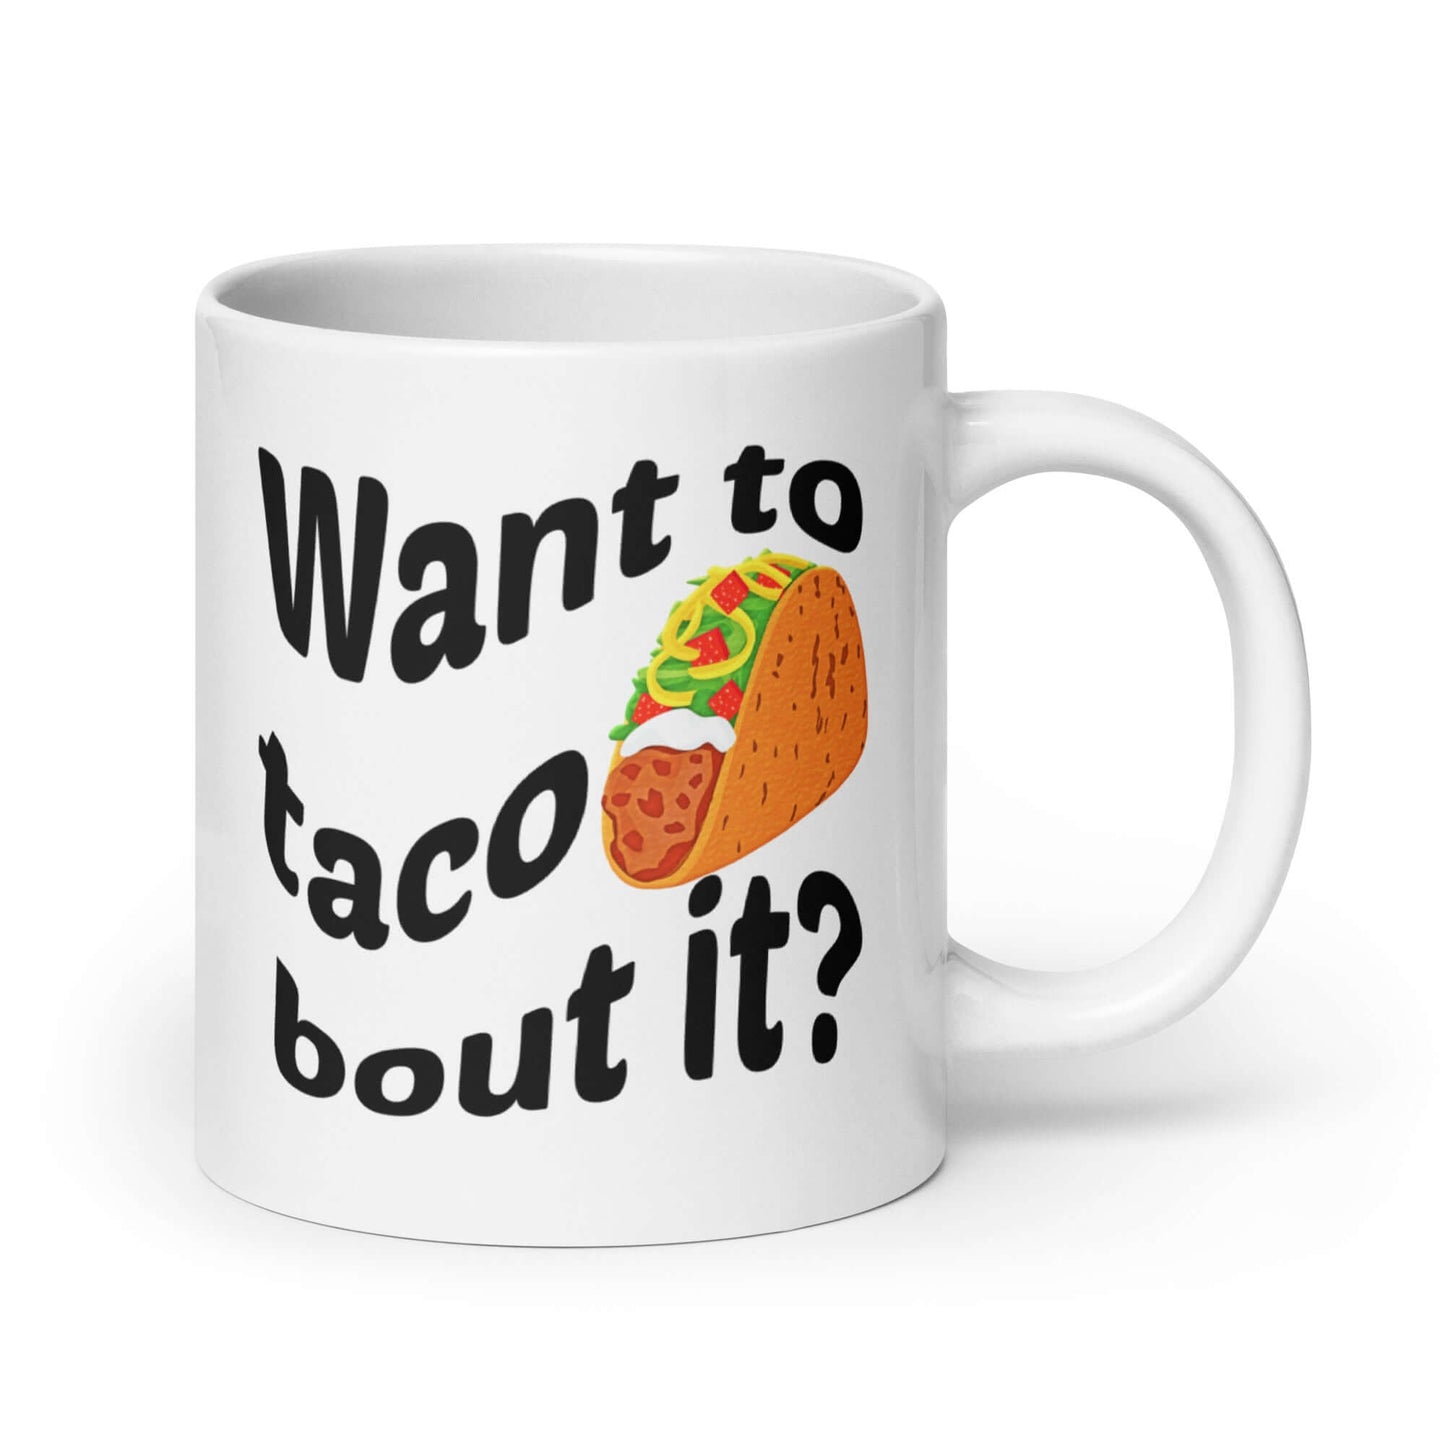 Taco pun funny mug